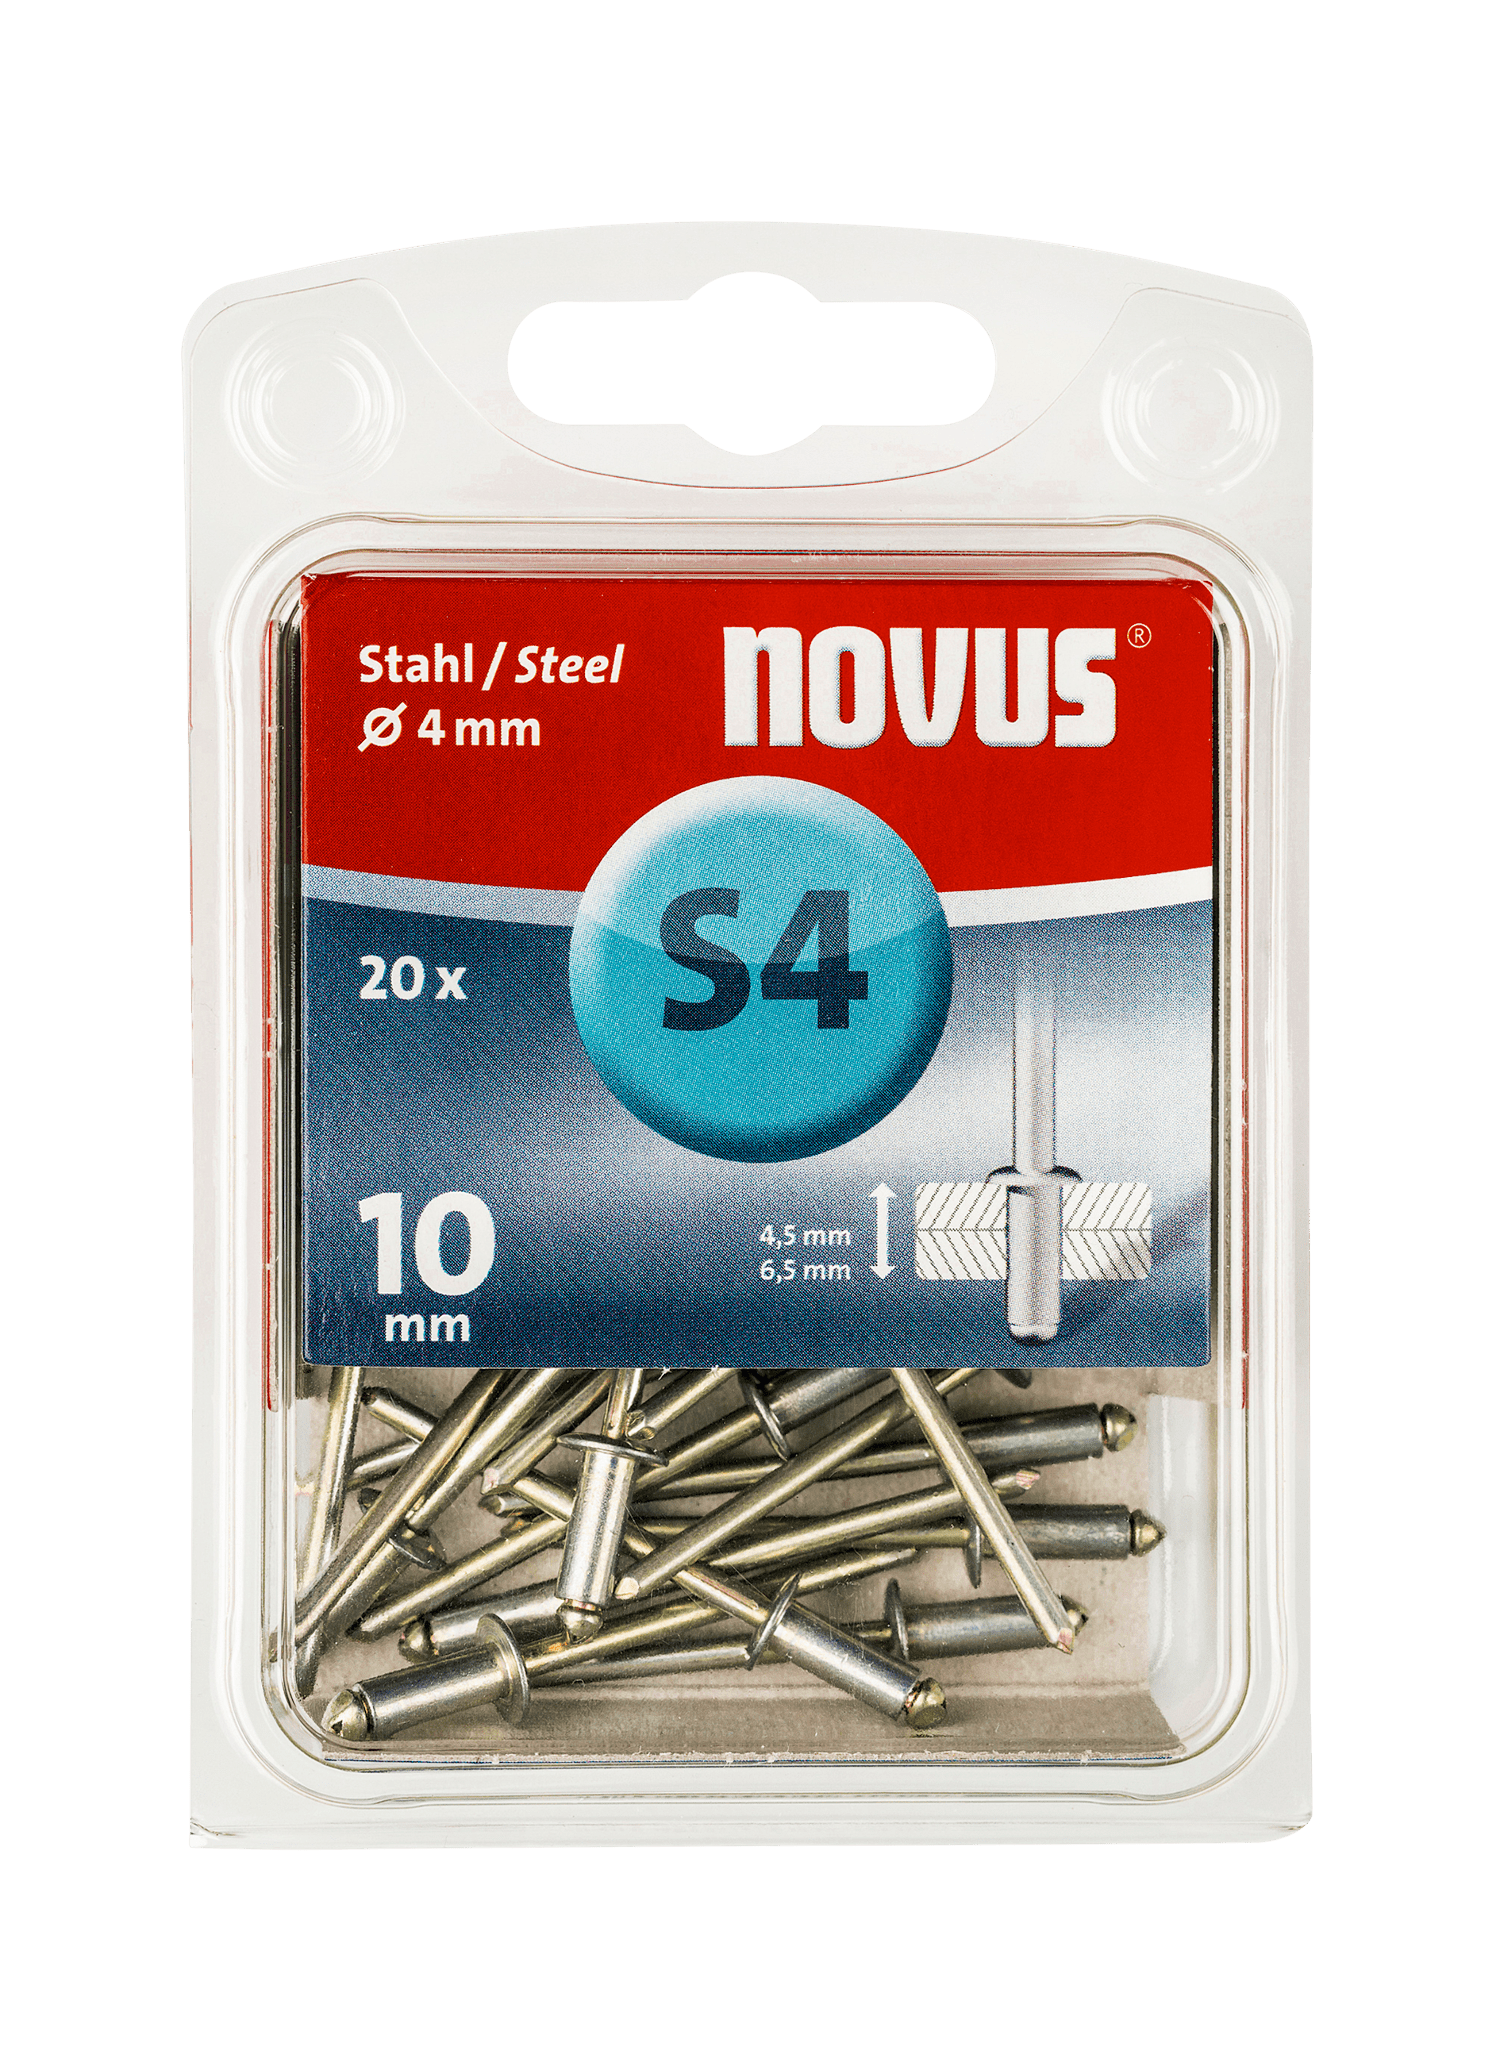 NOVUS steel blind rivet Type S4